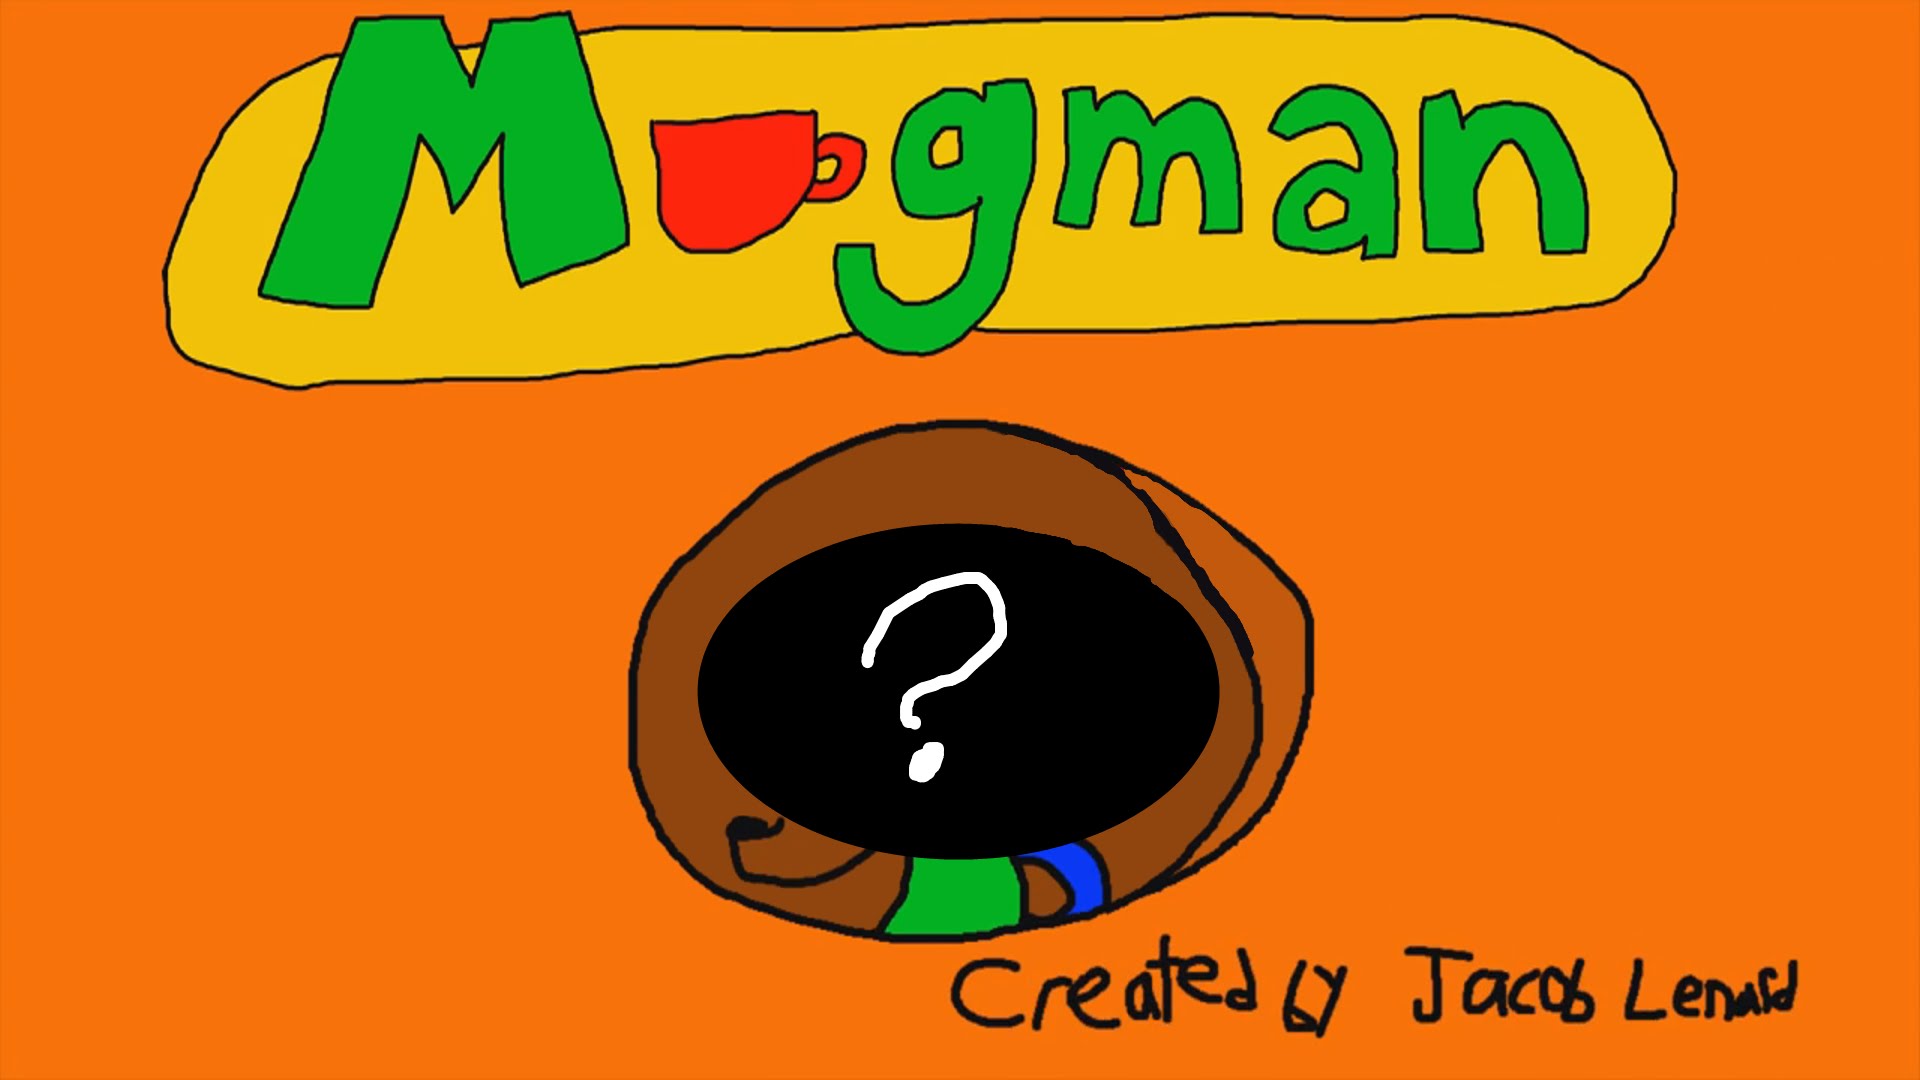 It's me Mugman - YouTube